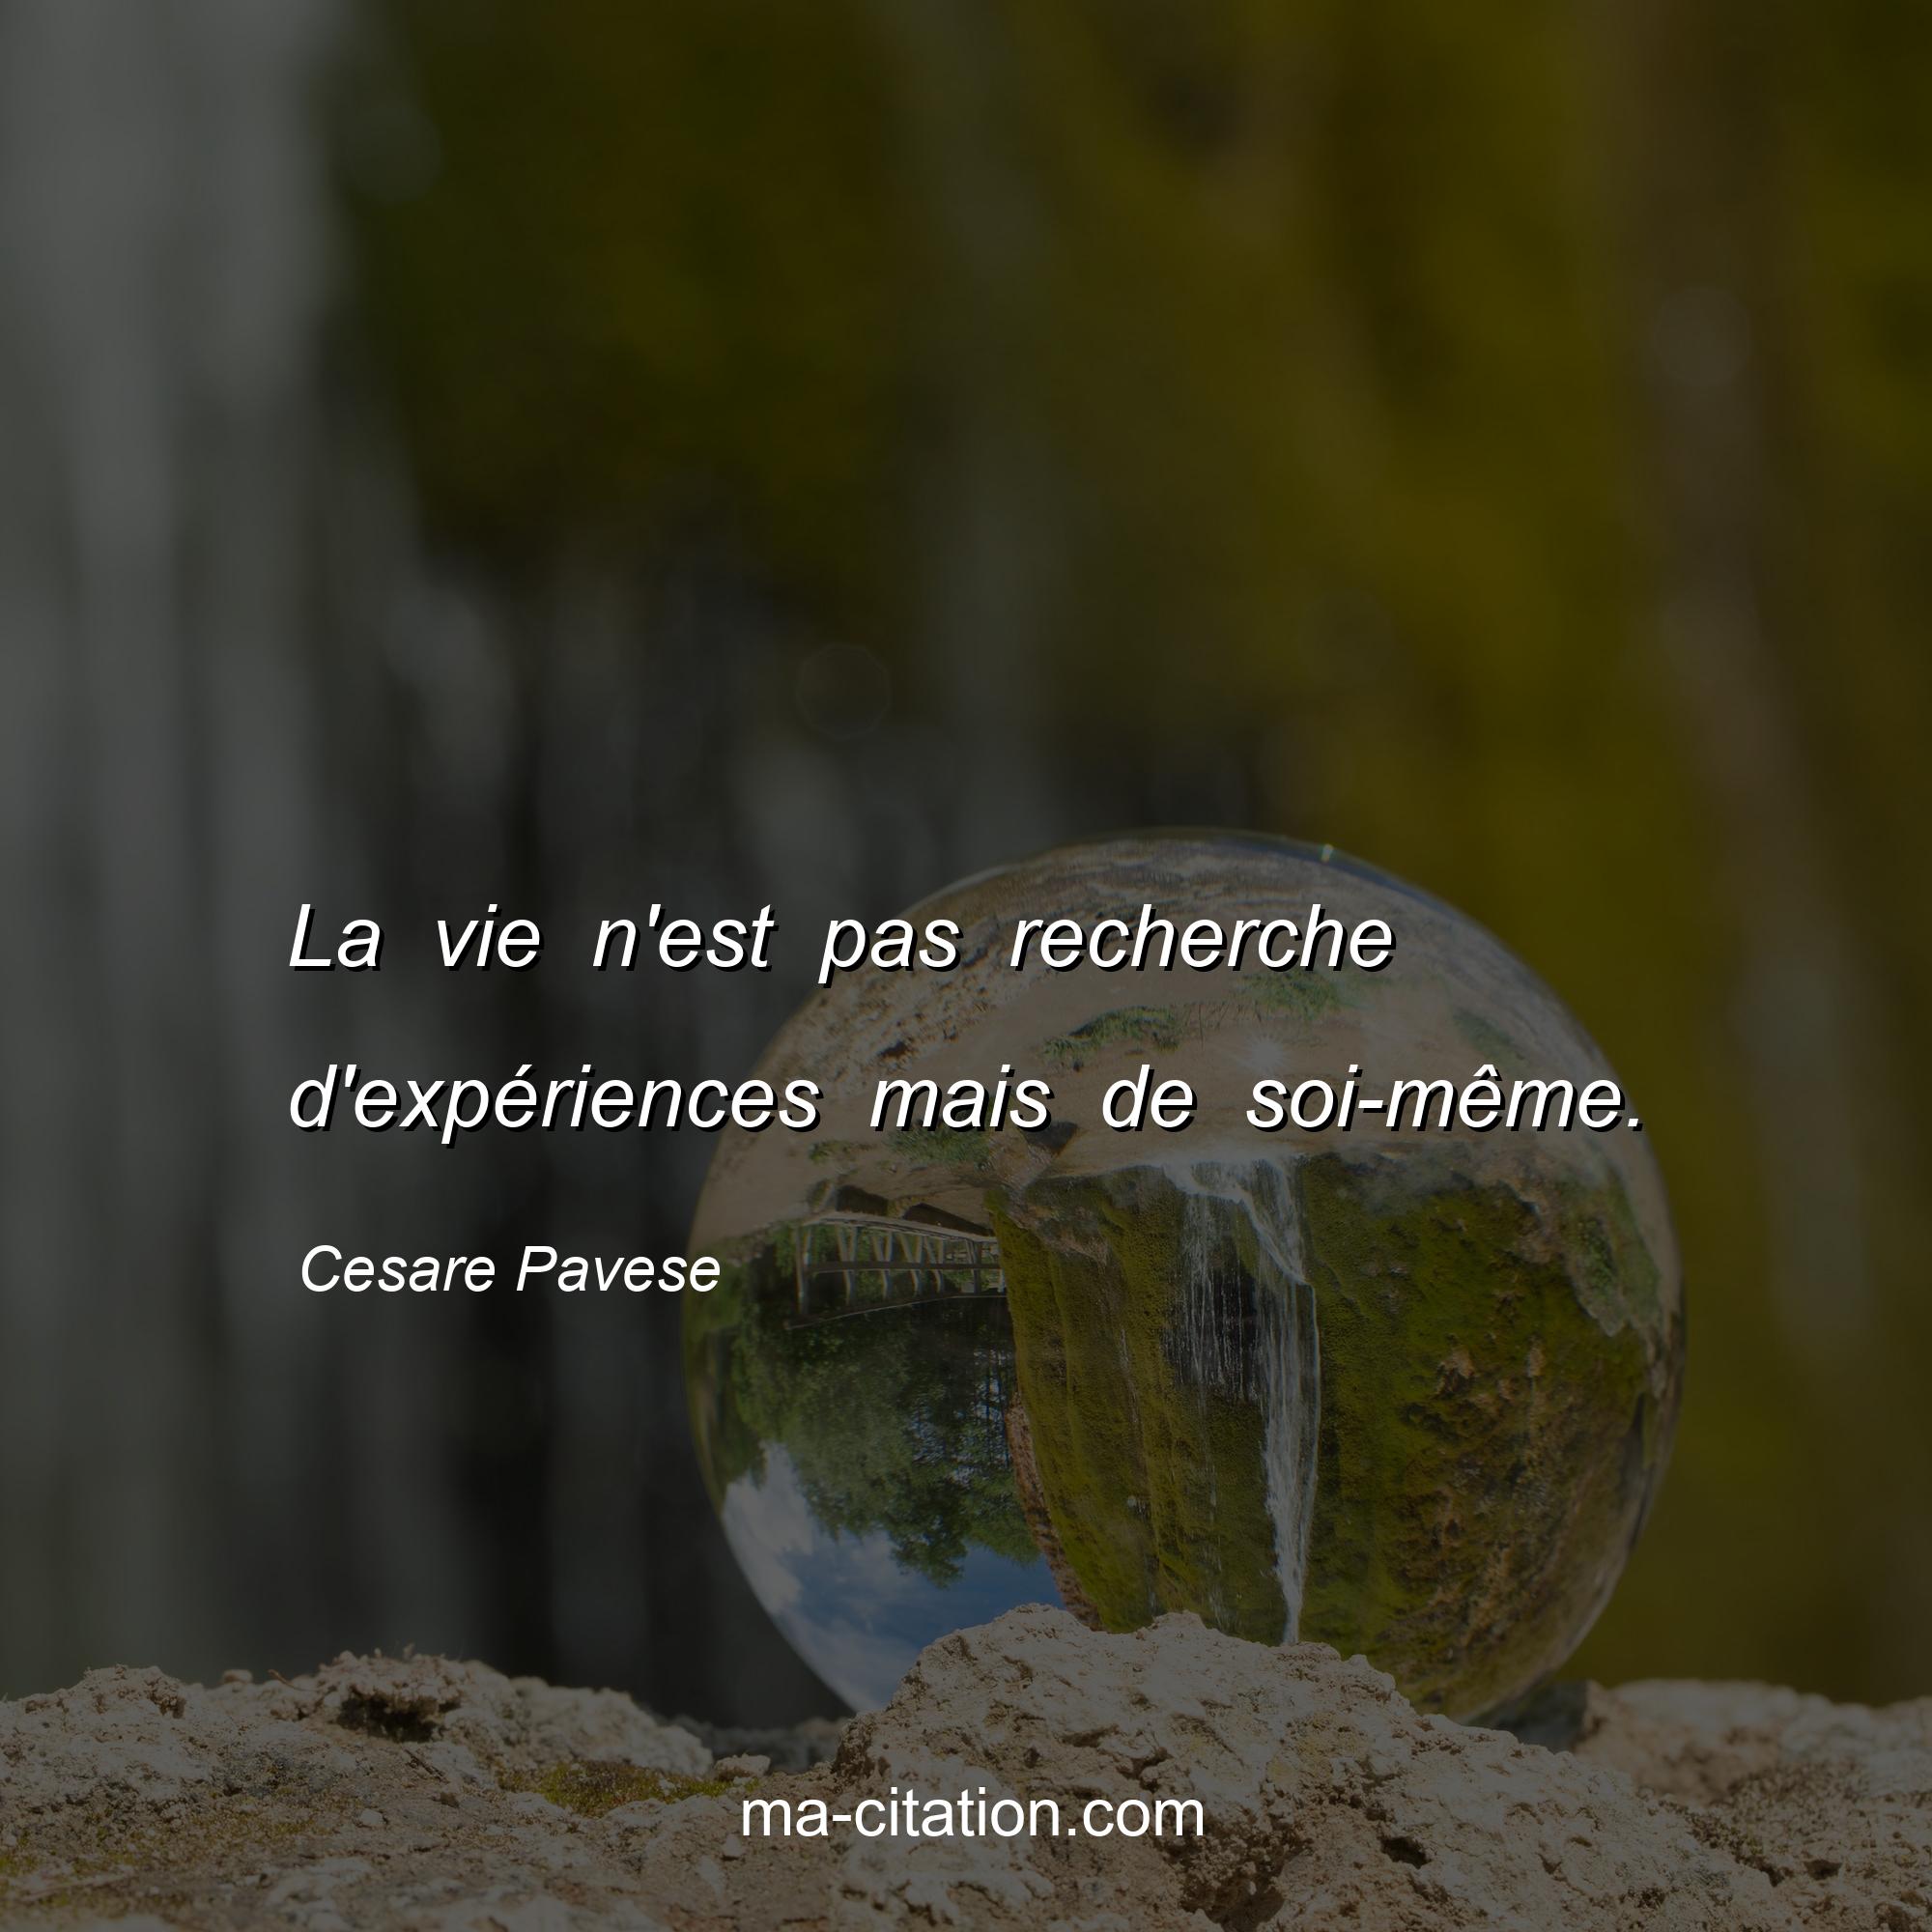 Cesare Pavese : La vie n'est pas recherche d'expériences mais de soi-même.